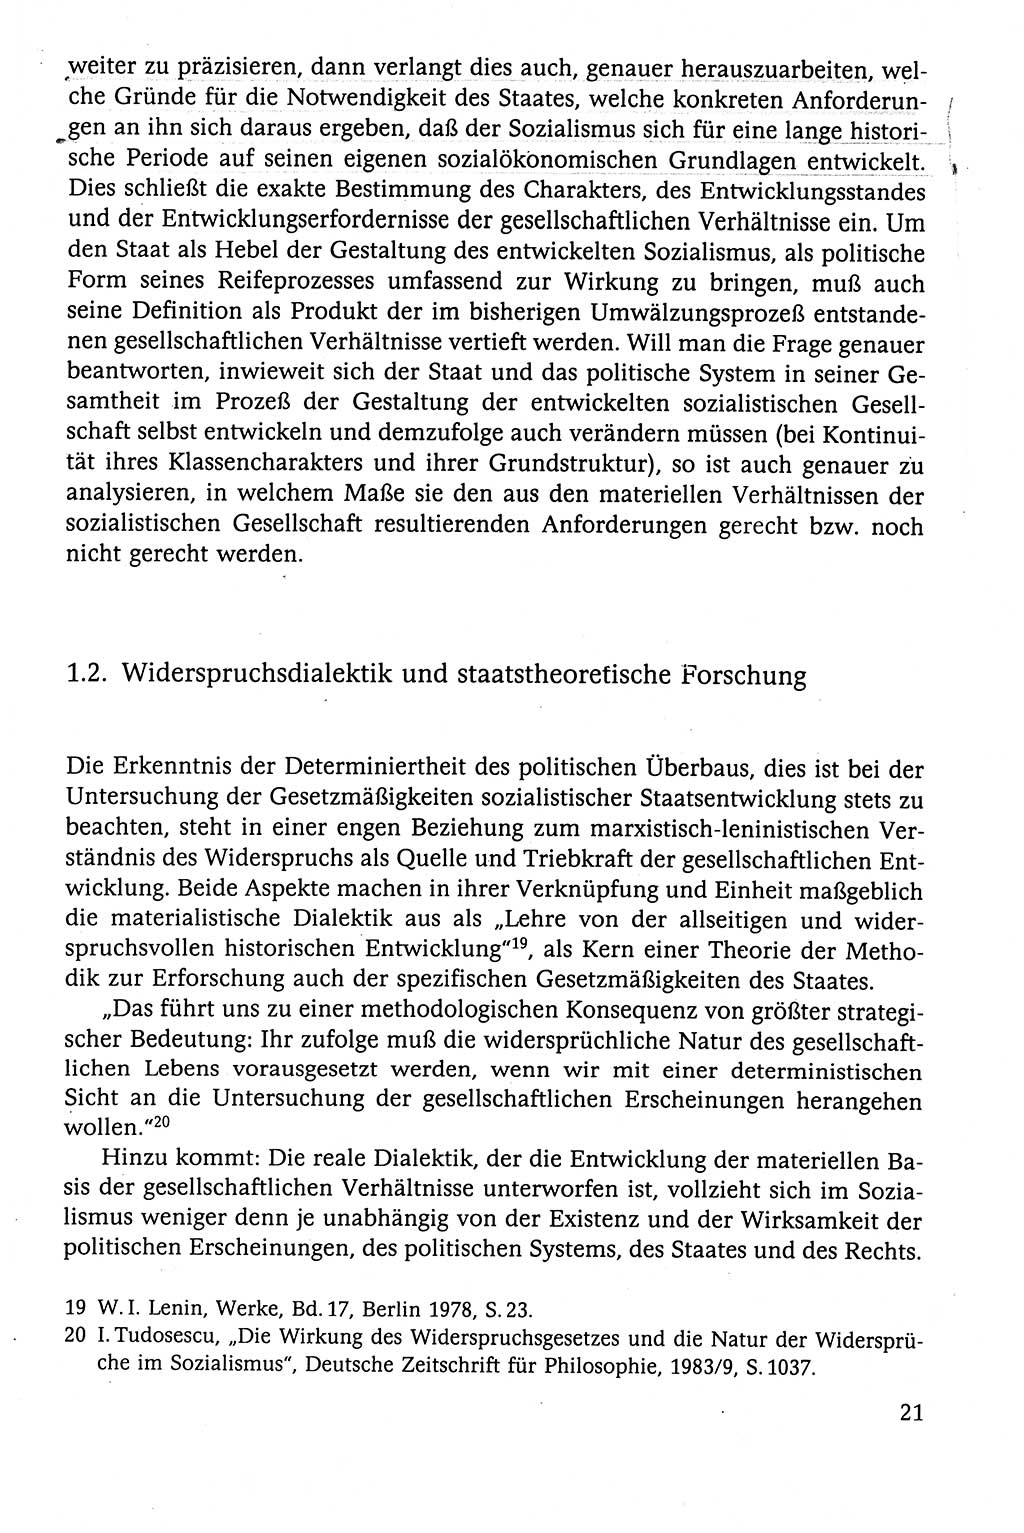 Der Staat im politischen System der DDR (Deutsche Demokratische Republik) 1986, Seite 21 (St. pol. Sys. DDR 1986, S. 21)